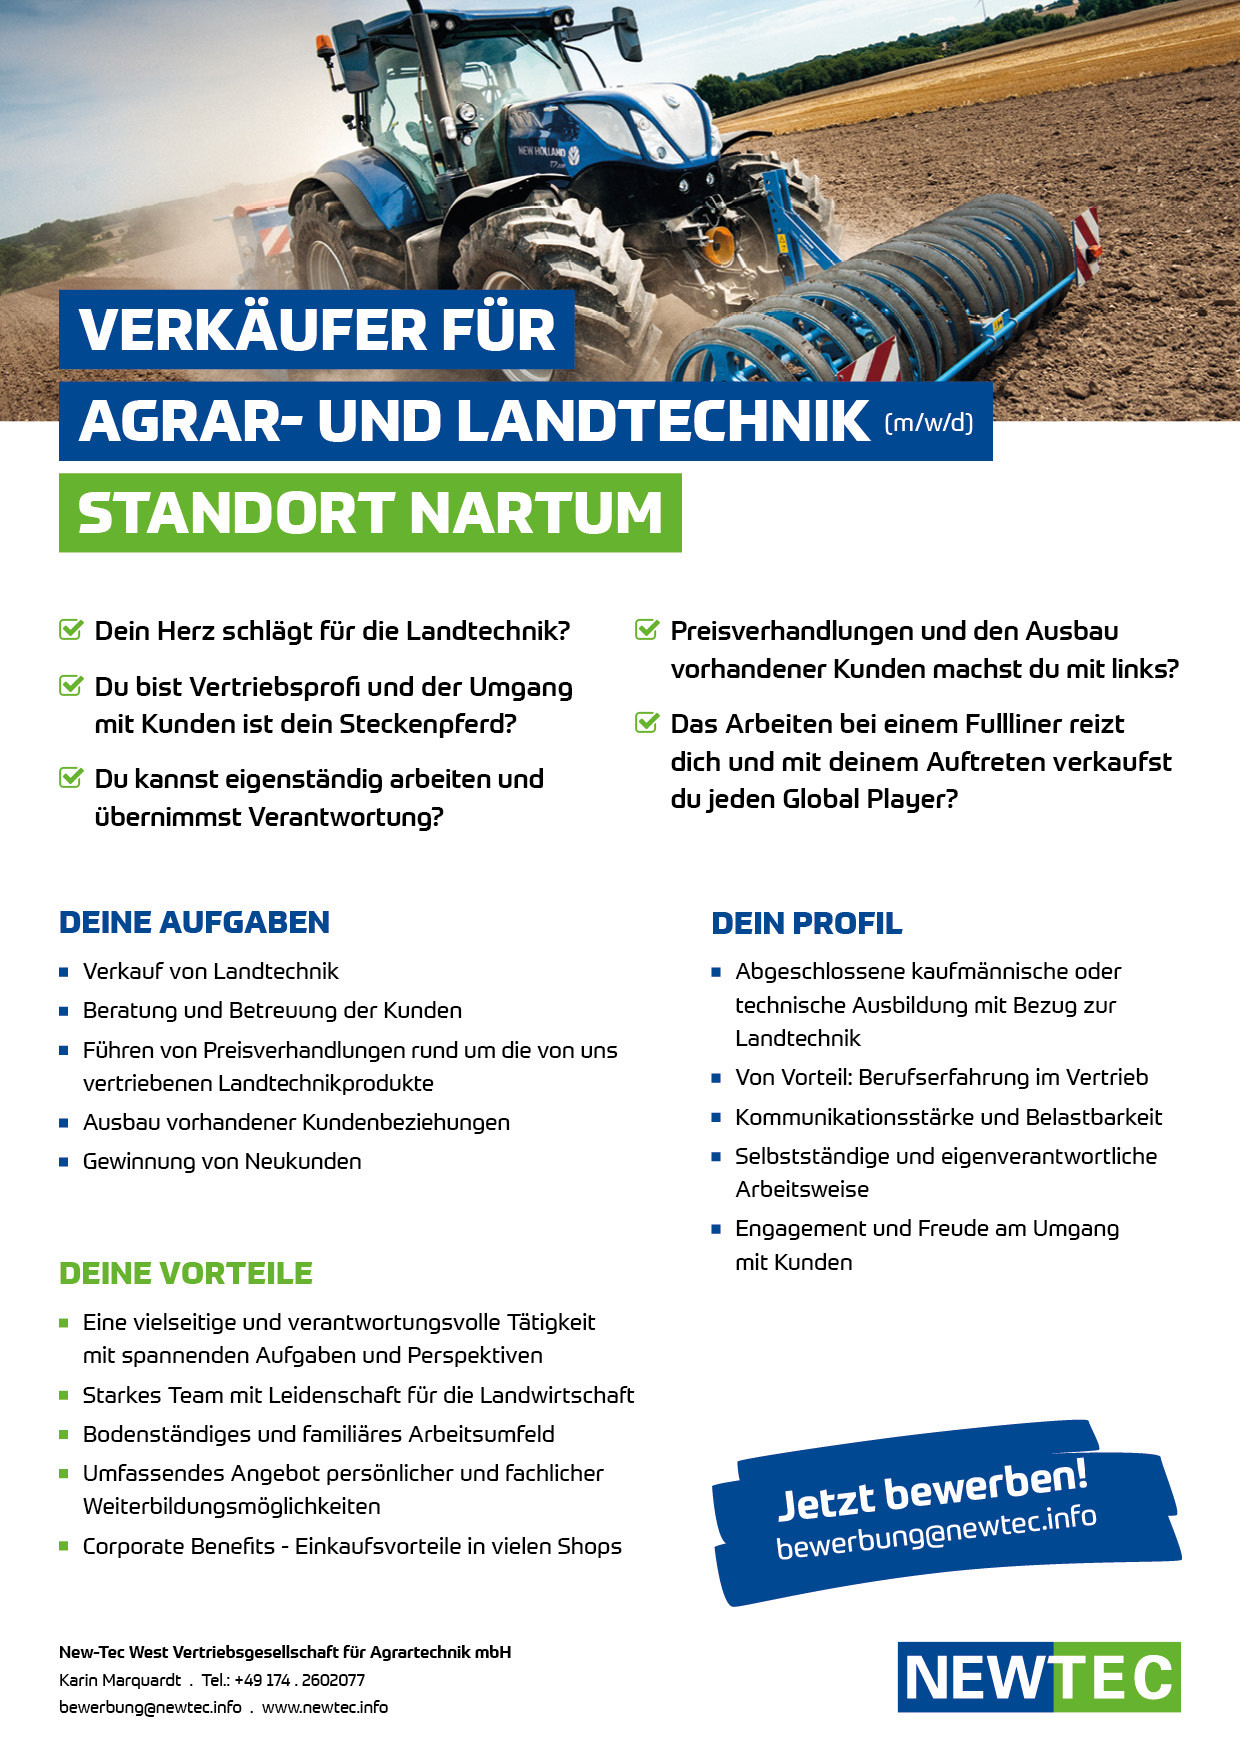 NEWTEC_Stellenanzeige_Verkaeufer_fuer_Agrar-und_Landtechnik_Nartum